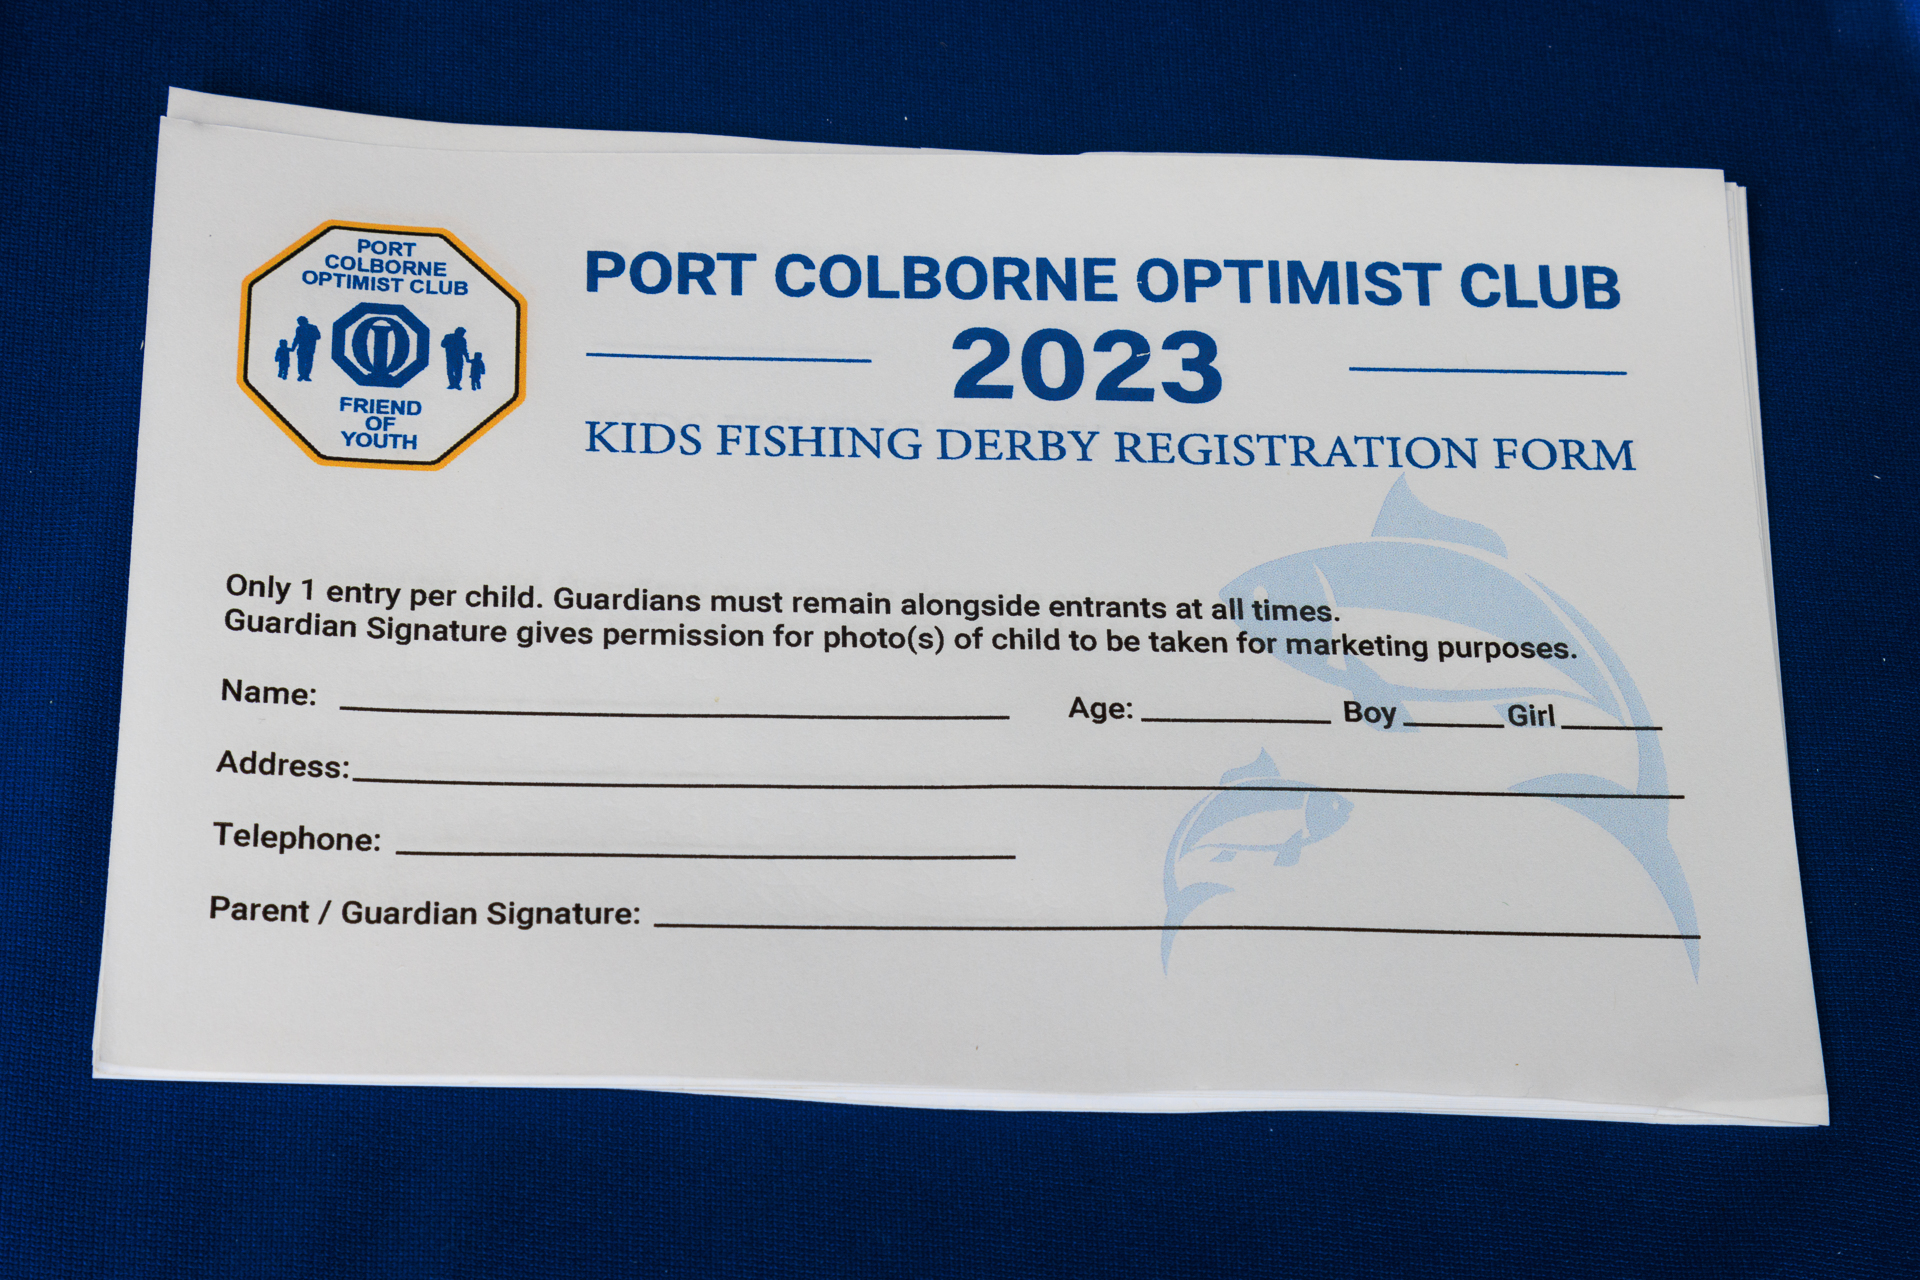 2023 Kids Fishing Derby